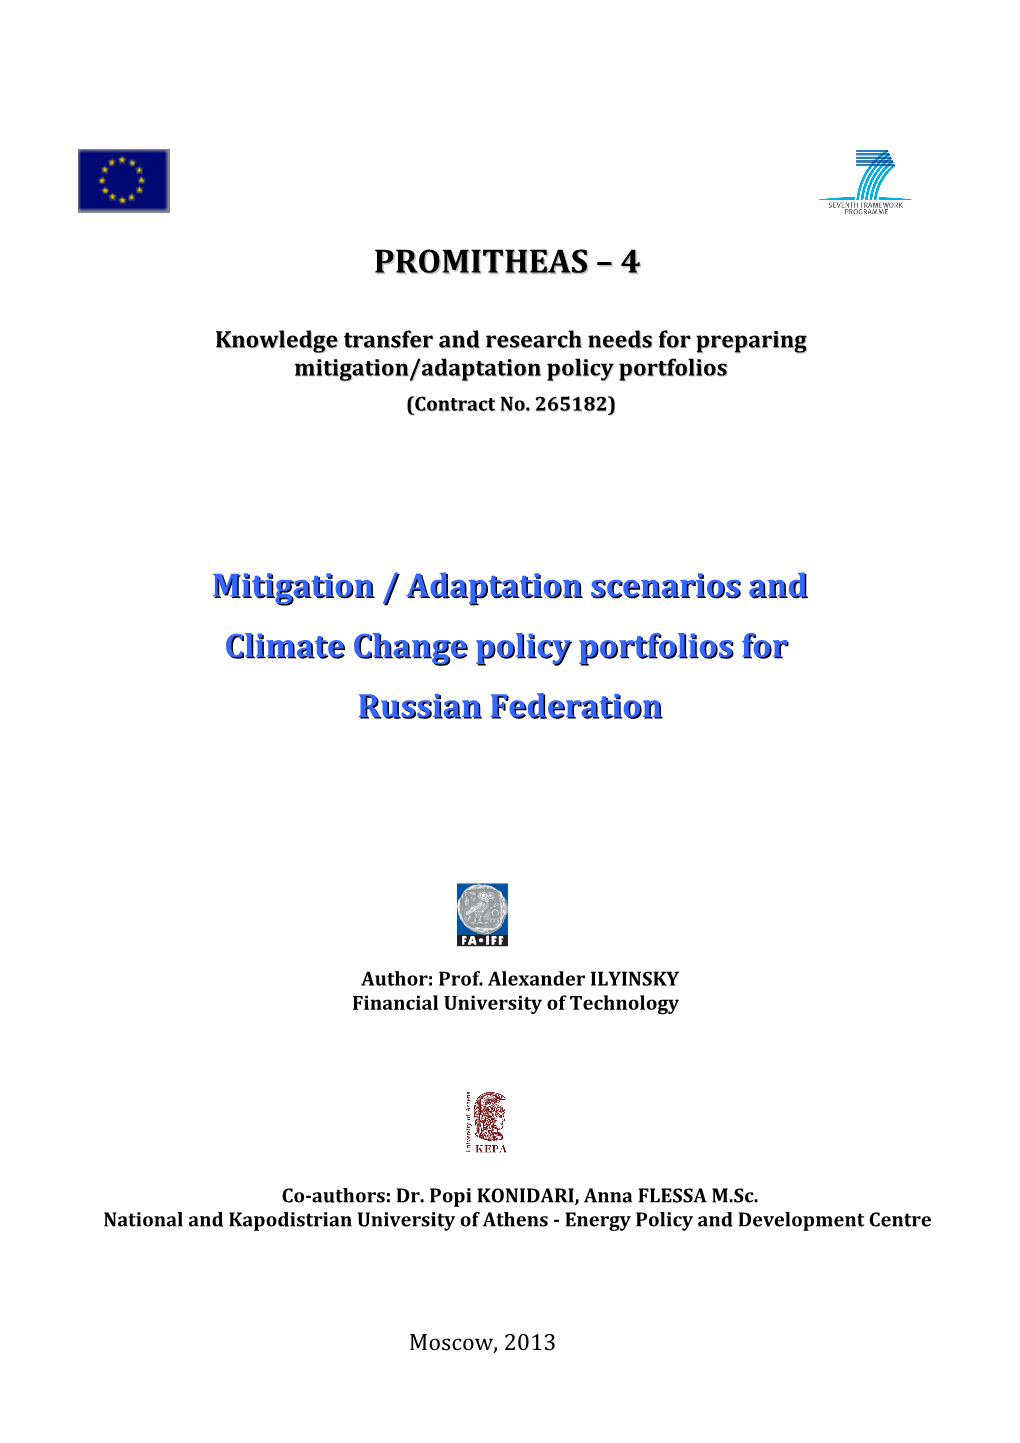 Scenarios About Mitigation/Adaptation Policy Portfolios of the Country